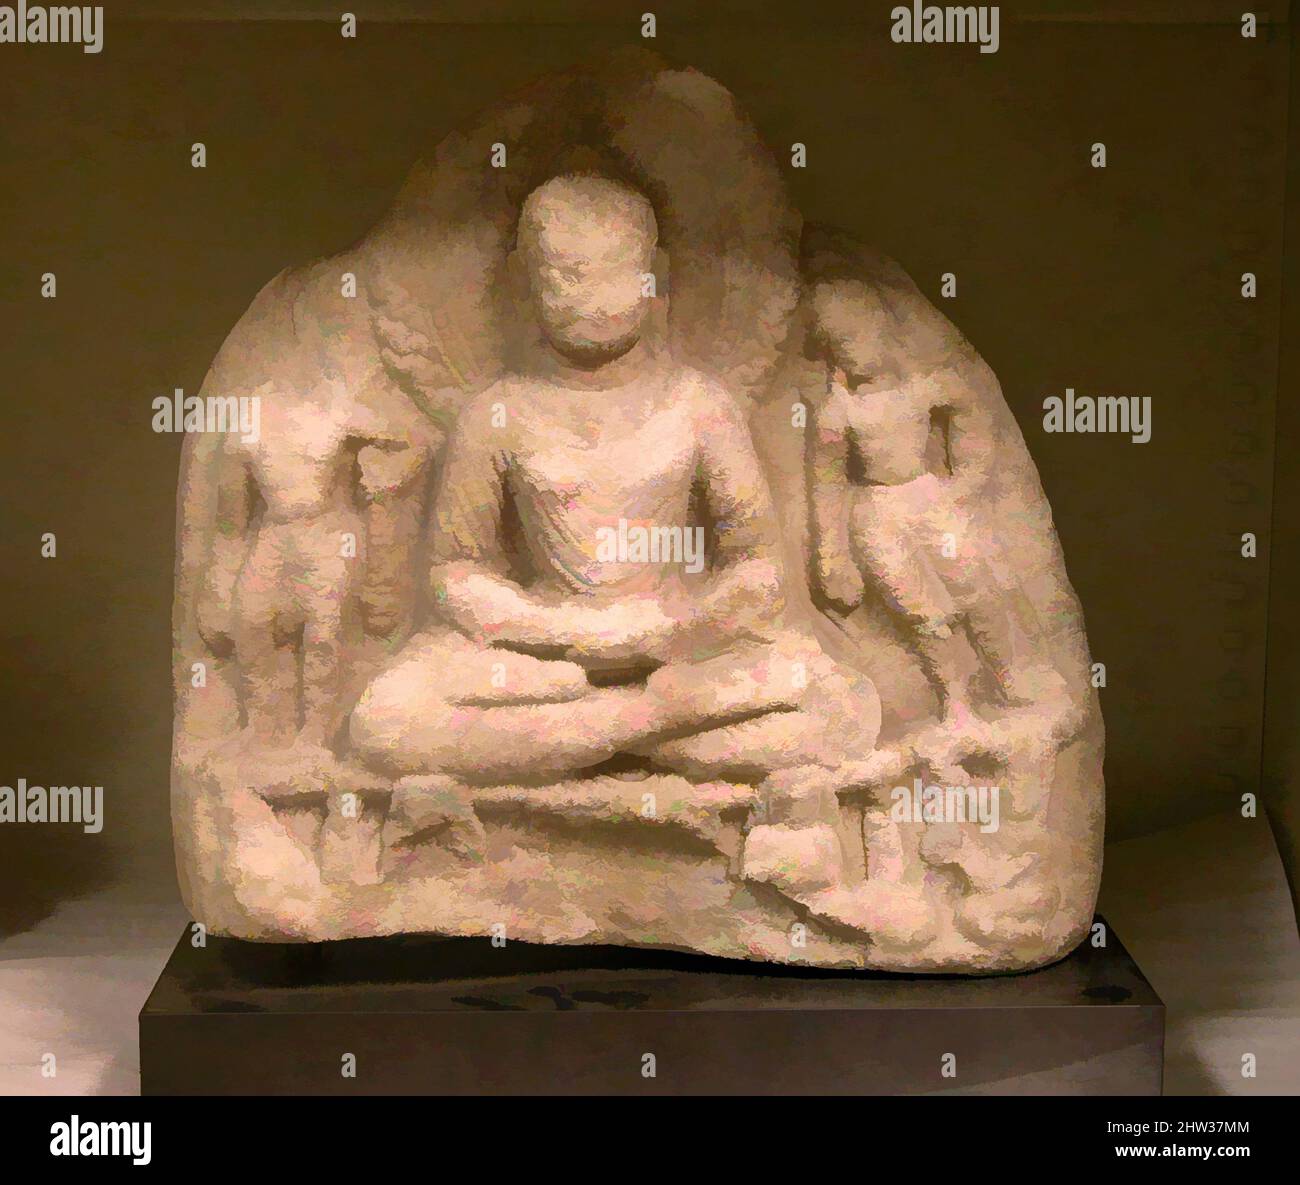 Kunst inspiriert durch den meditierenden Buddha, besucht von zwei Bodhisattvas, 7.–8. Jahrhundert, Pakistan (Swat-Tal), Marmor, H. 22 1/4 Zoll (56,5 cm); B: 22 3/4 Zoll (57,8 cm); D. 5 Zoll (12,7 cm), Skulptur, der Buddha sitzt in einer Meditationshaltung (dhyana mudra), wobei sein Kopf von einem flammenden, von Artotop modernisierten klassischen Werk mit einem Schuss Moderne eingerahmt wird. Formen, Farbe und Wert, auffällige visuelle Wirkung auf Kunst. Emotionen durch Freiheit von Kunstwerken auf zeitgemäße Weise. Eine zeitlose Botschaft, die eine wild kreative neue Richtung verfolgt. Künstler, die sich dem digitalen Medium zuwenden und die Artotop NFT erschaffen Stockfoto